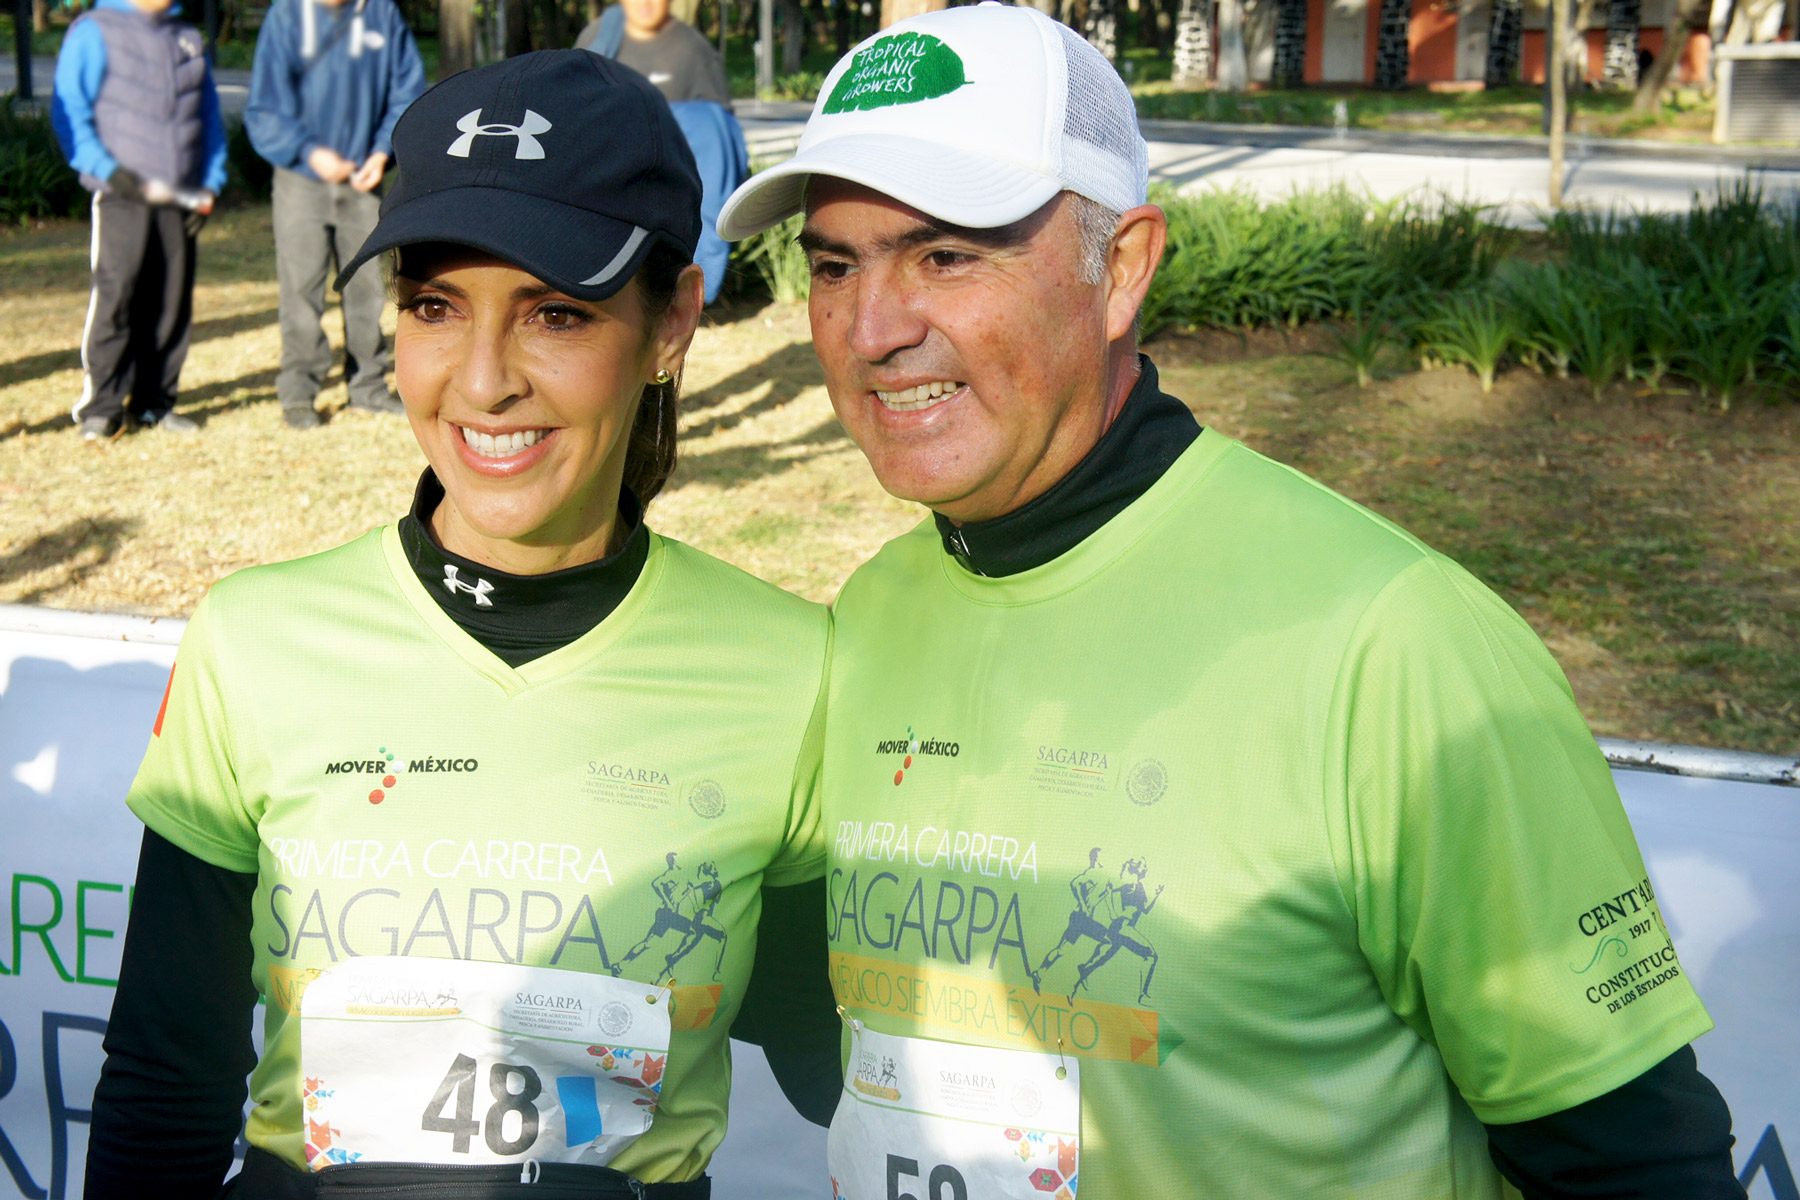 El Secretario Pepe Calzada y su esposa participaron dentro de la carrera, el titular mencionó que esta es la primera edición de la Carrera SAGARPA